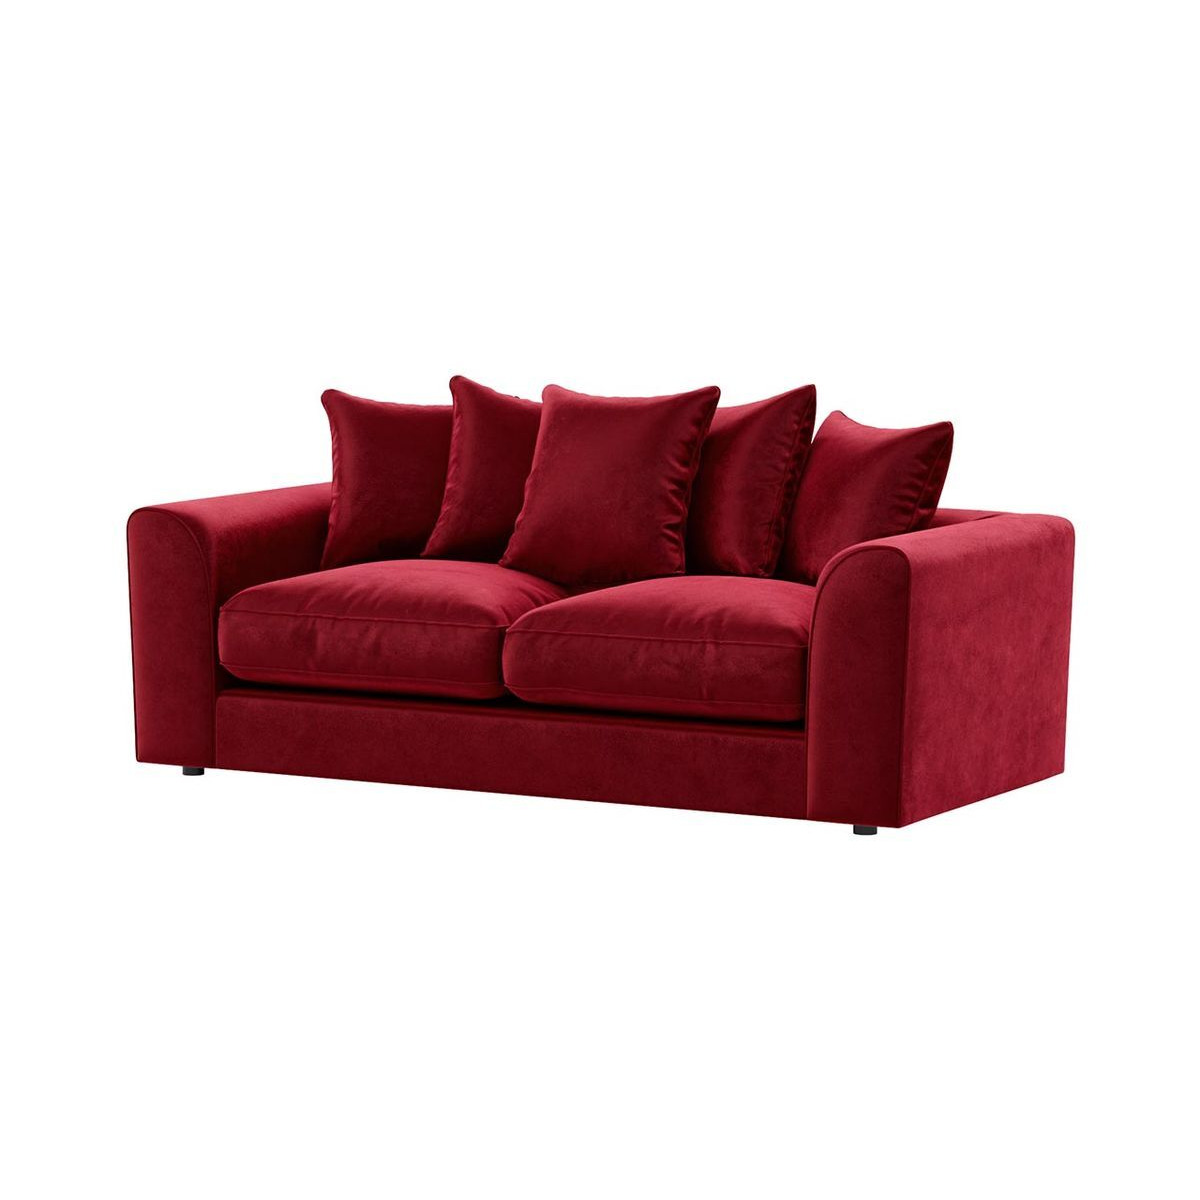 Dillon Velvet 3 Seater Sofa, dark red - image 1